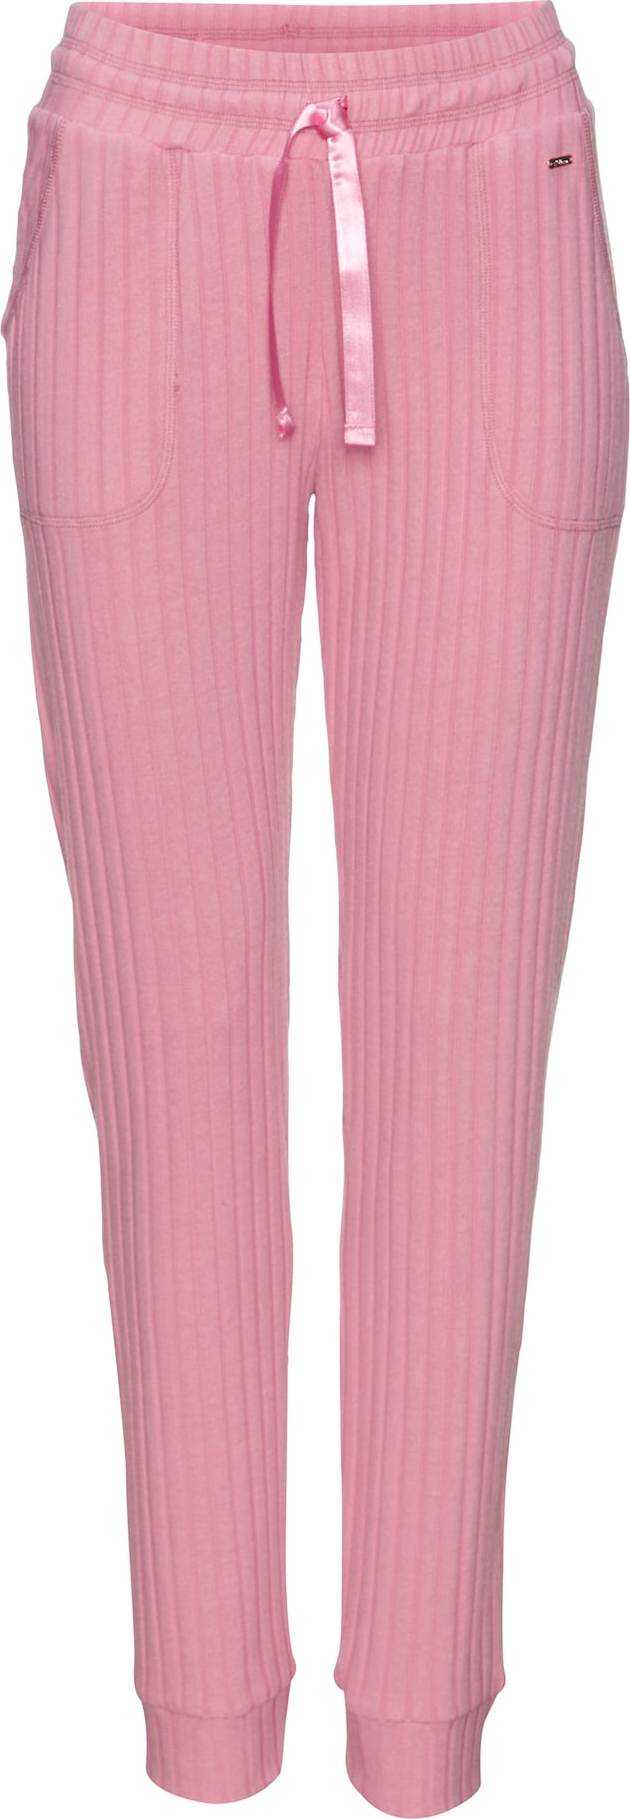 s.Oliver Pyžamové kalhoty pink